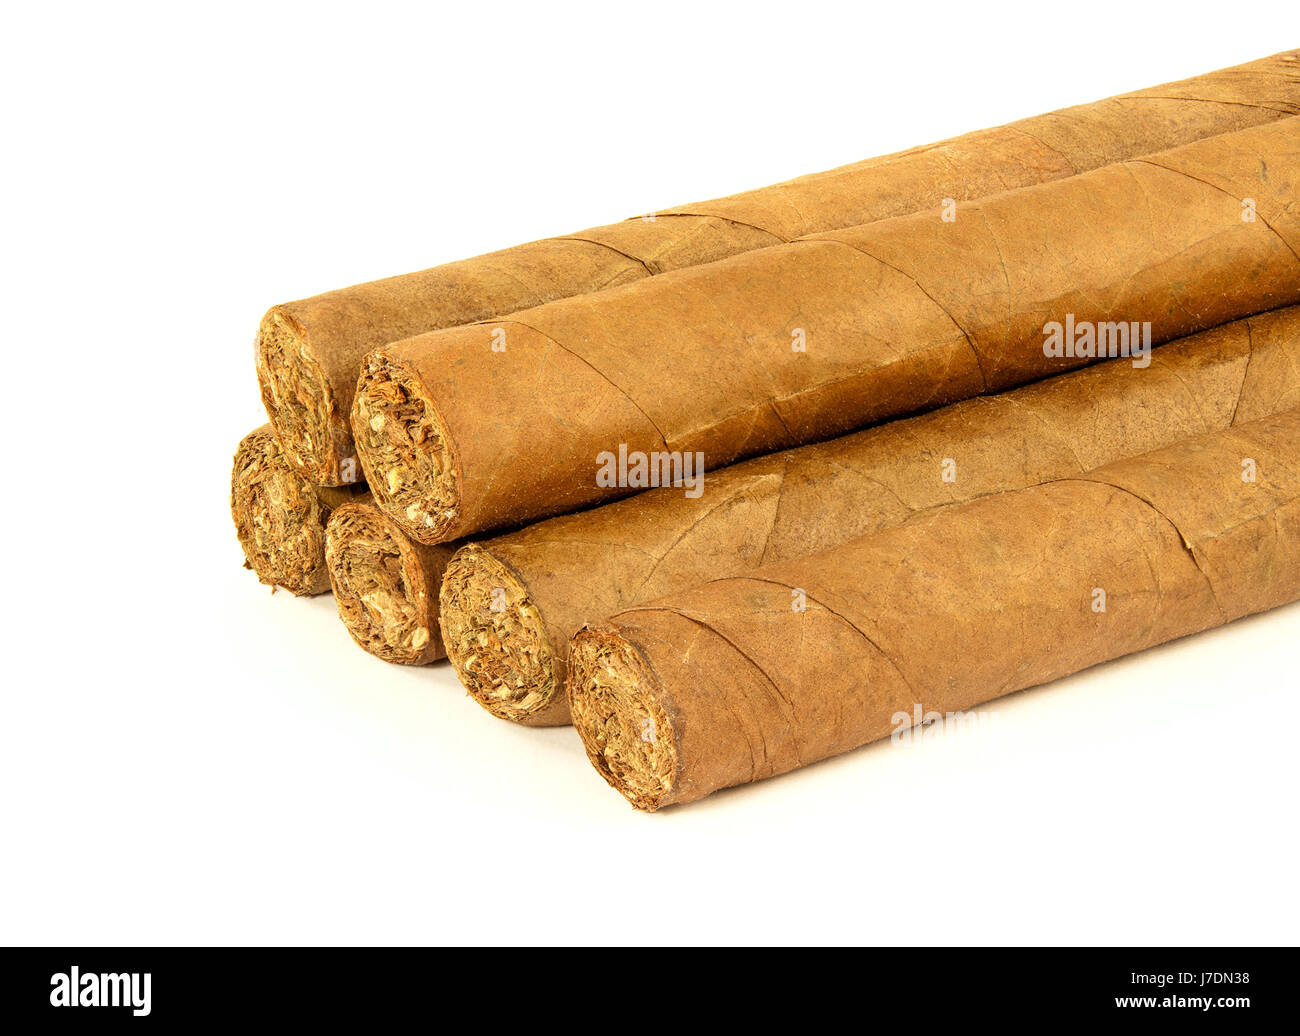 Tabacco sigari cubani cuba havana fumatore odore di fumo di sigaro fumare  uomini uomo leaf Foto stock - Alamy